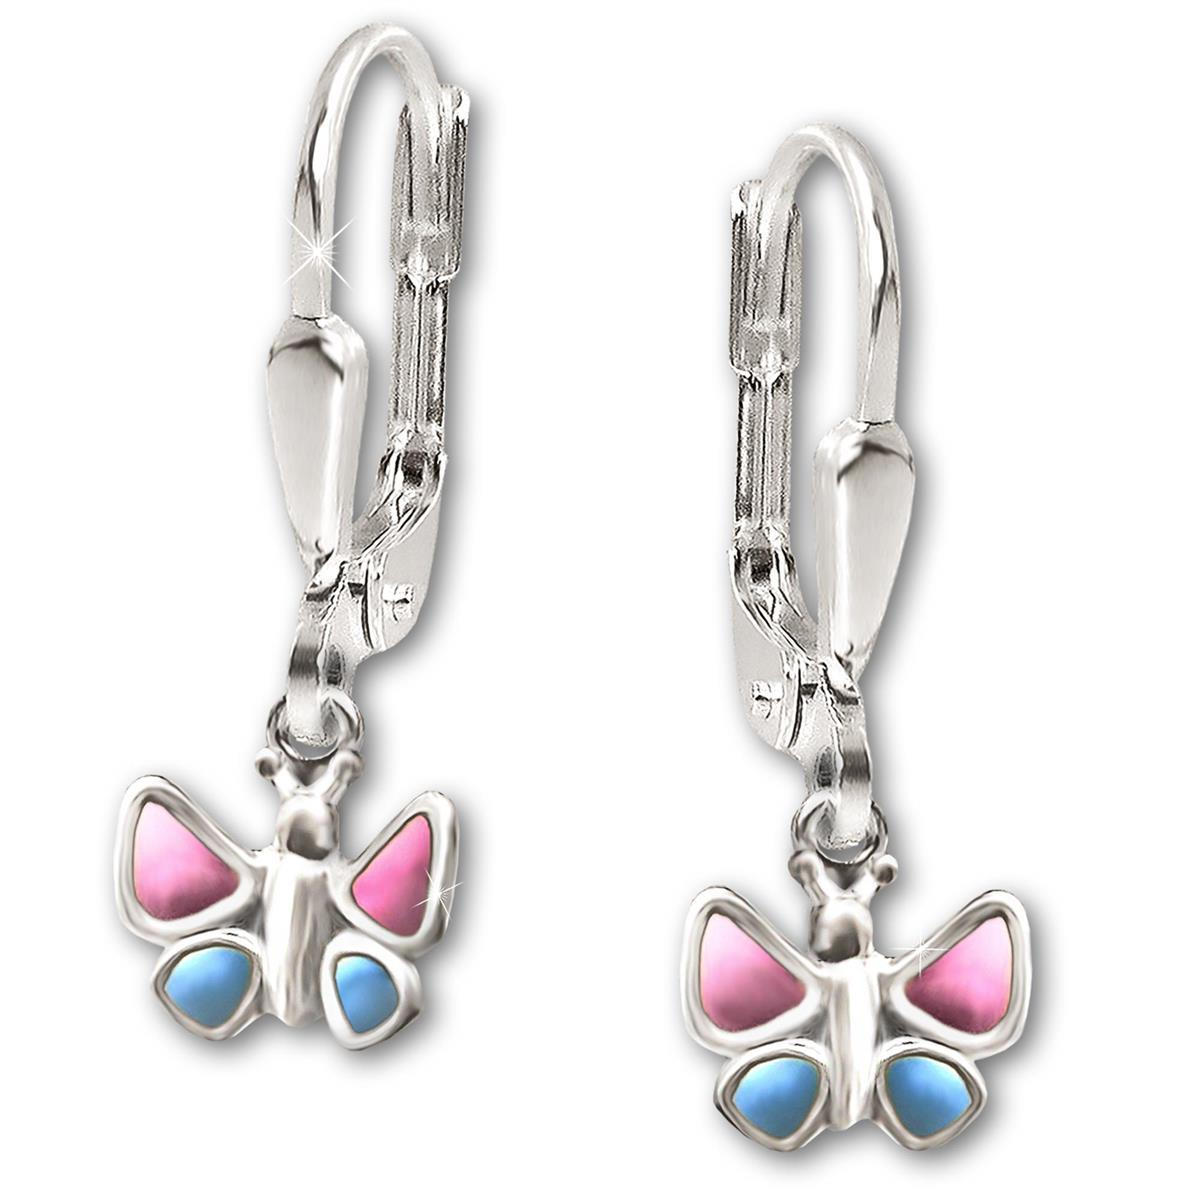 Silberne Ohrhänger 21 mm Schmetterling 7 mm plastisch rosa blau lackiert und glänzend STERLING SILBER 925